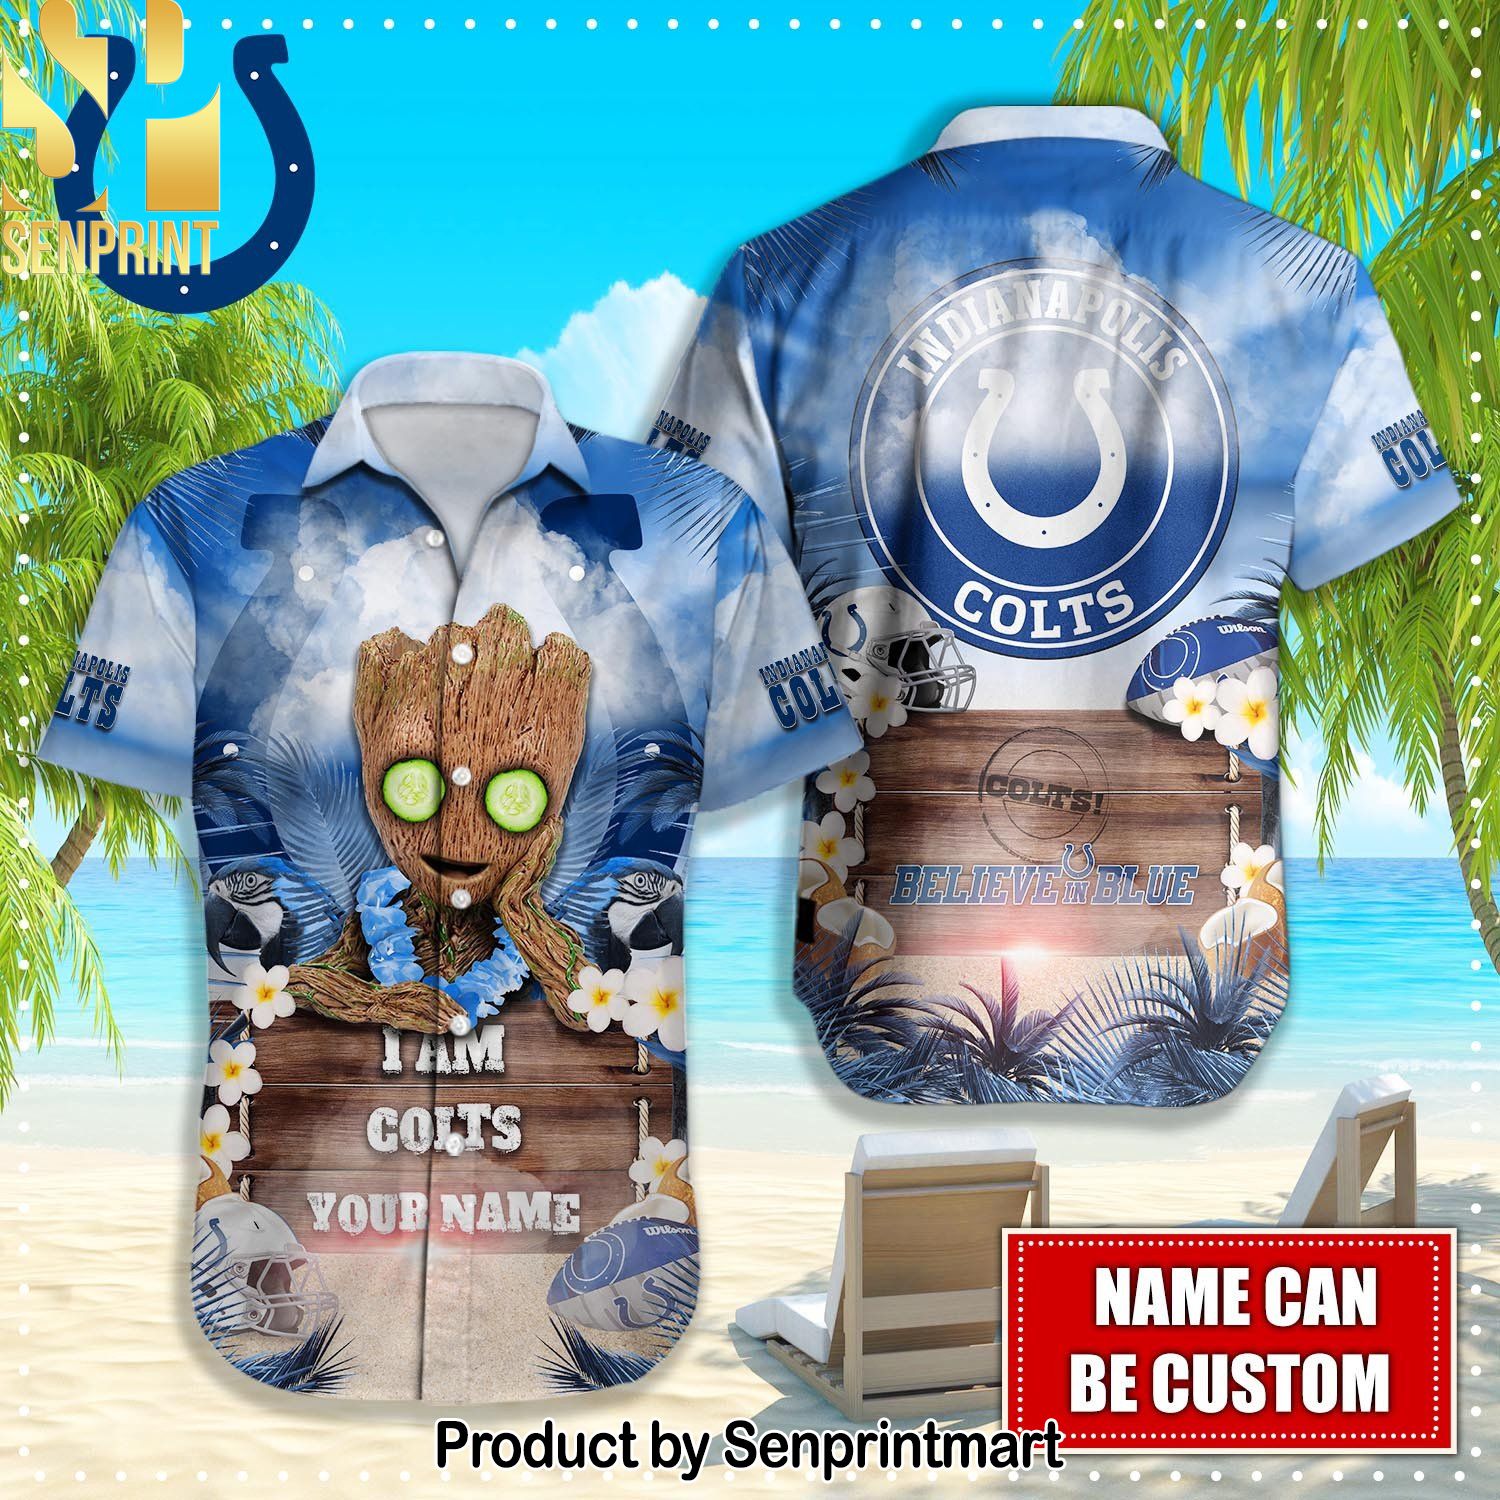 Indianapolis Colts NFL Unique Full Printed Hawaiian Shirt and Shorts